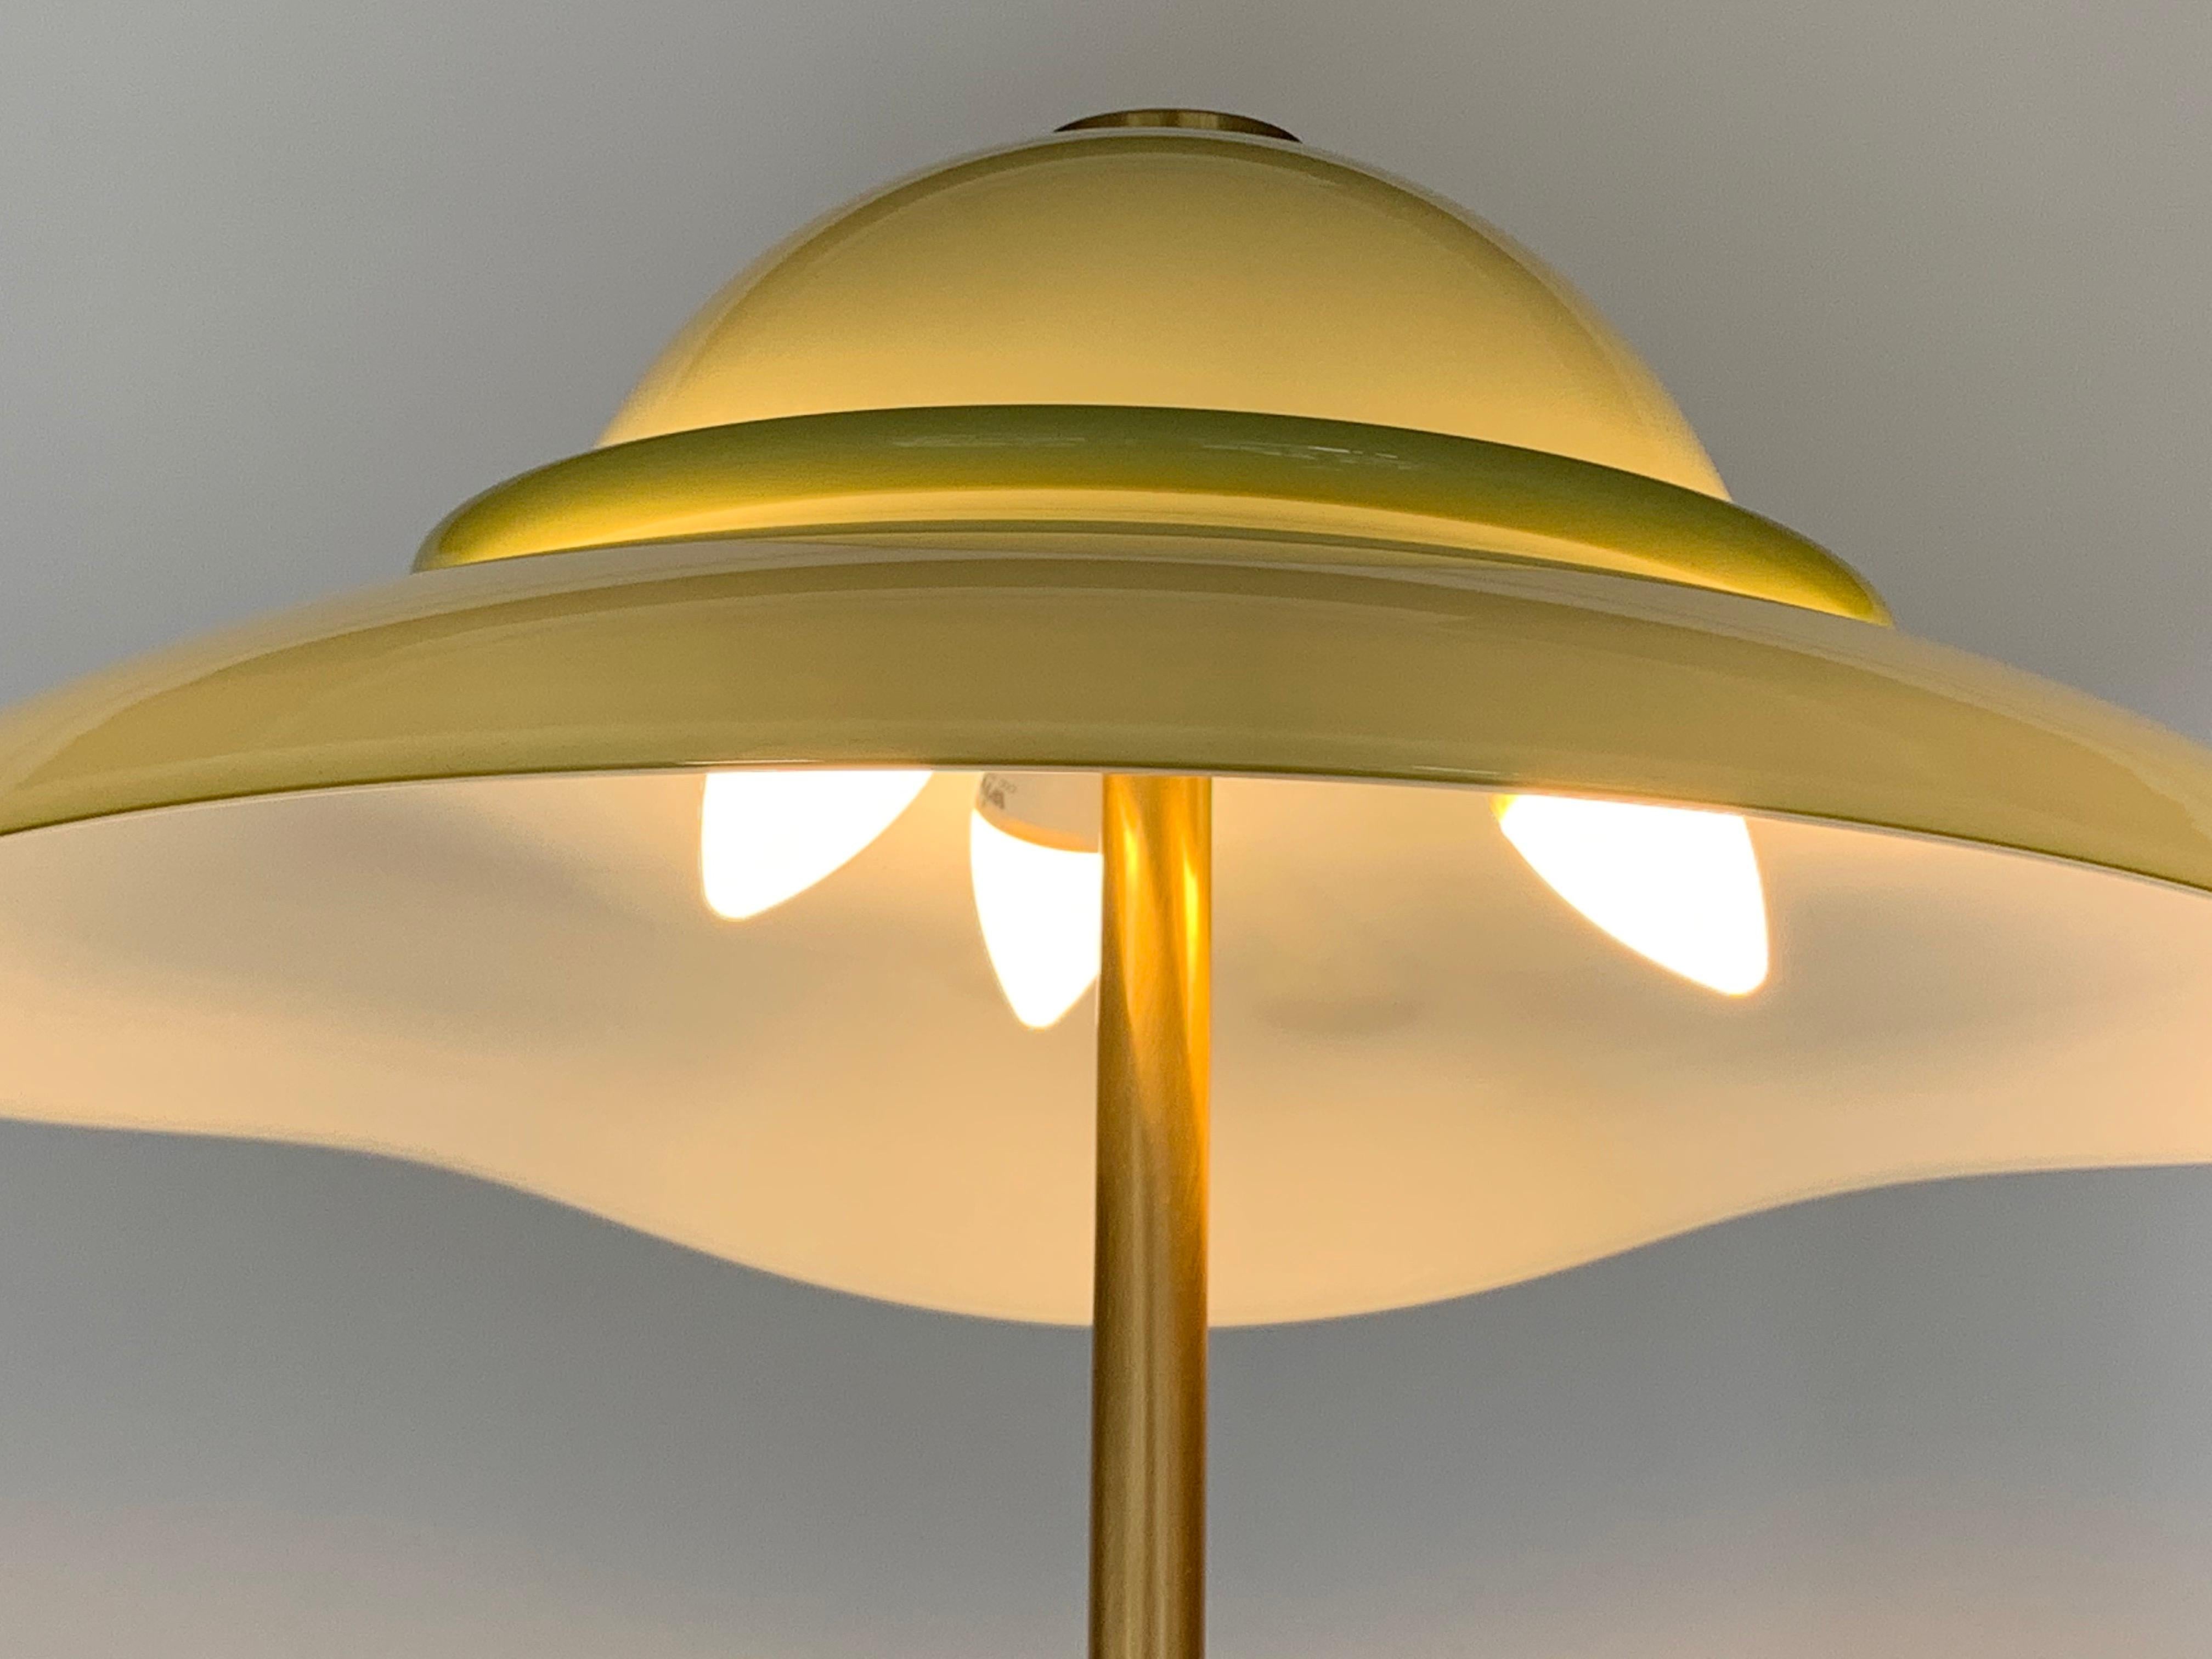 Lampadaire italien en verre de Murano conçu et produit par La Murrina en 1980. 
La structure de la lampe est en laiton brossé.
Conditions parfaites. Signé.

Une histoire courte :
L'histoire de l'entreprise remonte aux années 1960 à Murano, où